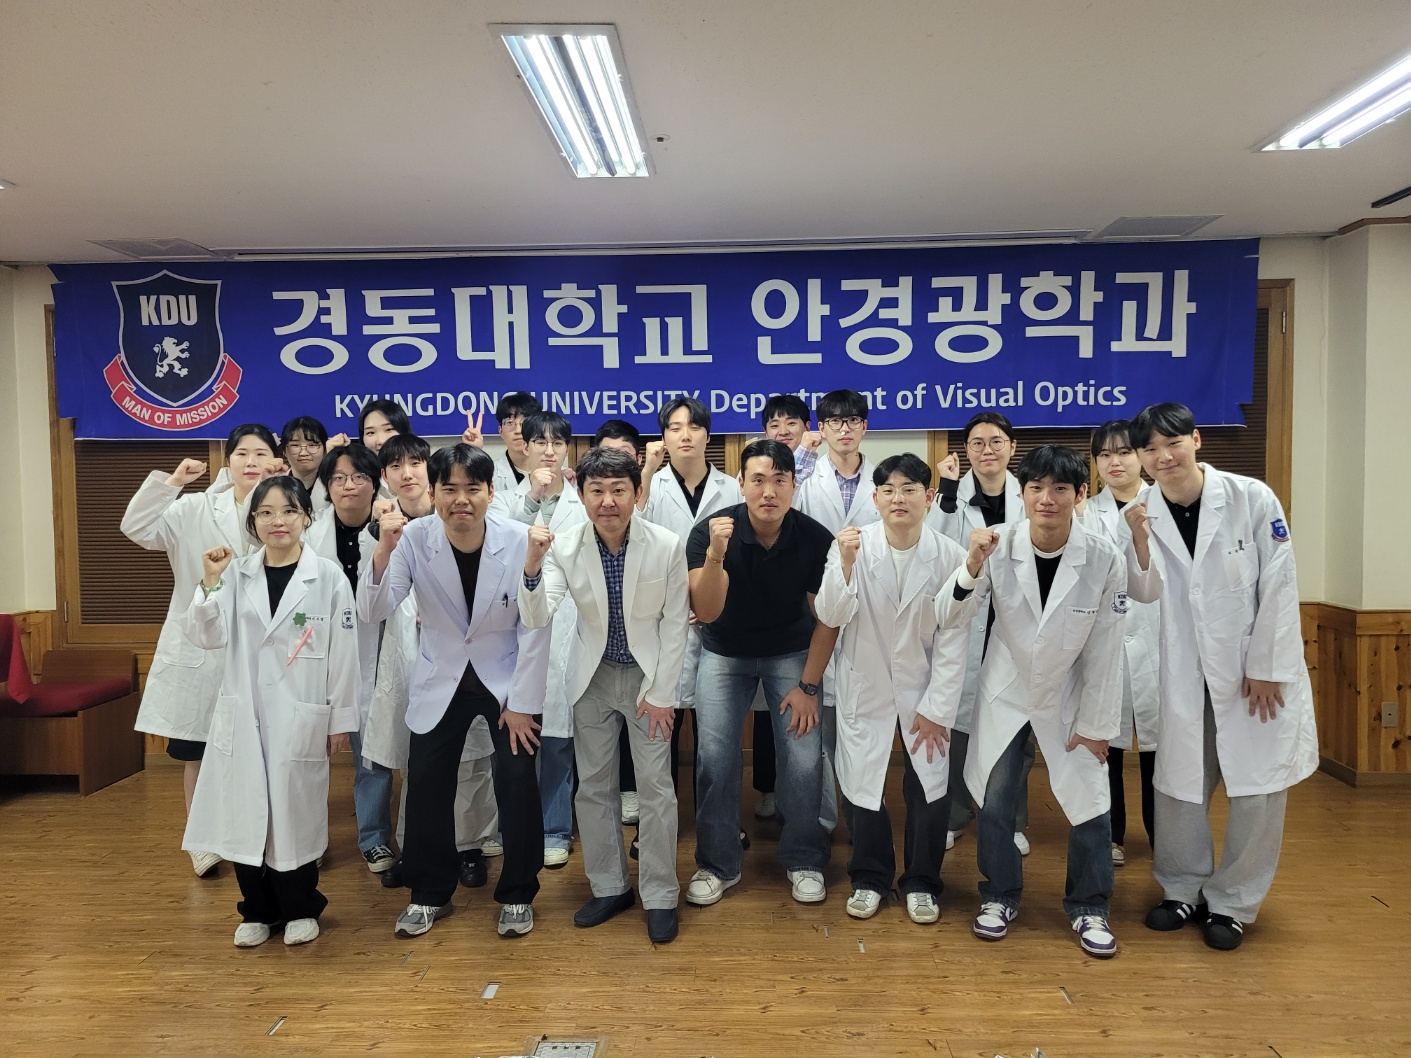 경동대 학생들, 취약계층에 맞춤 안경 무료봉사